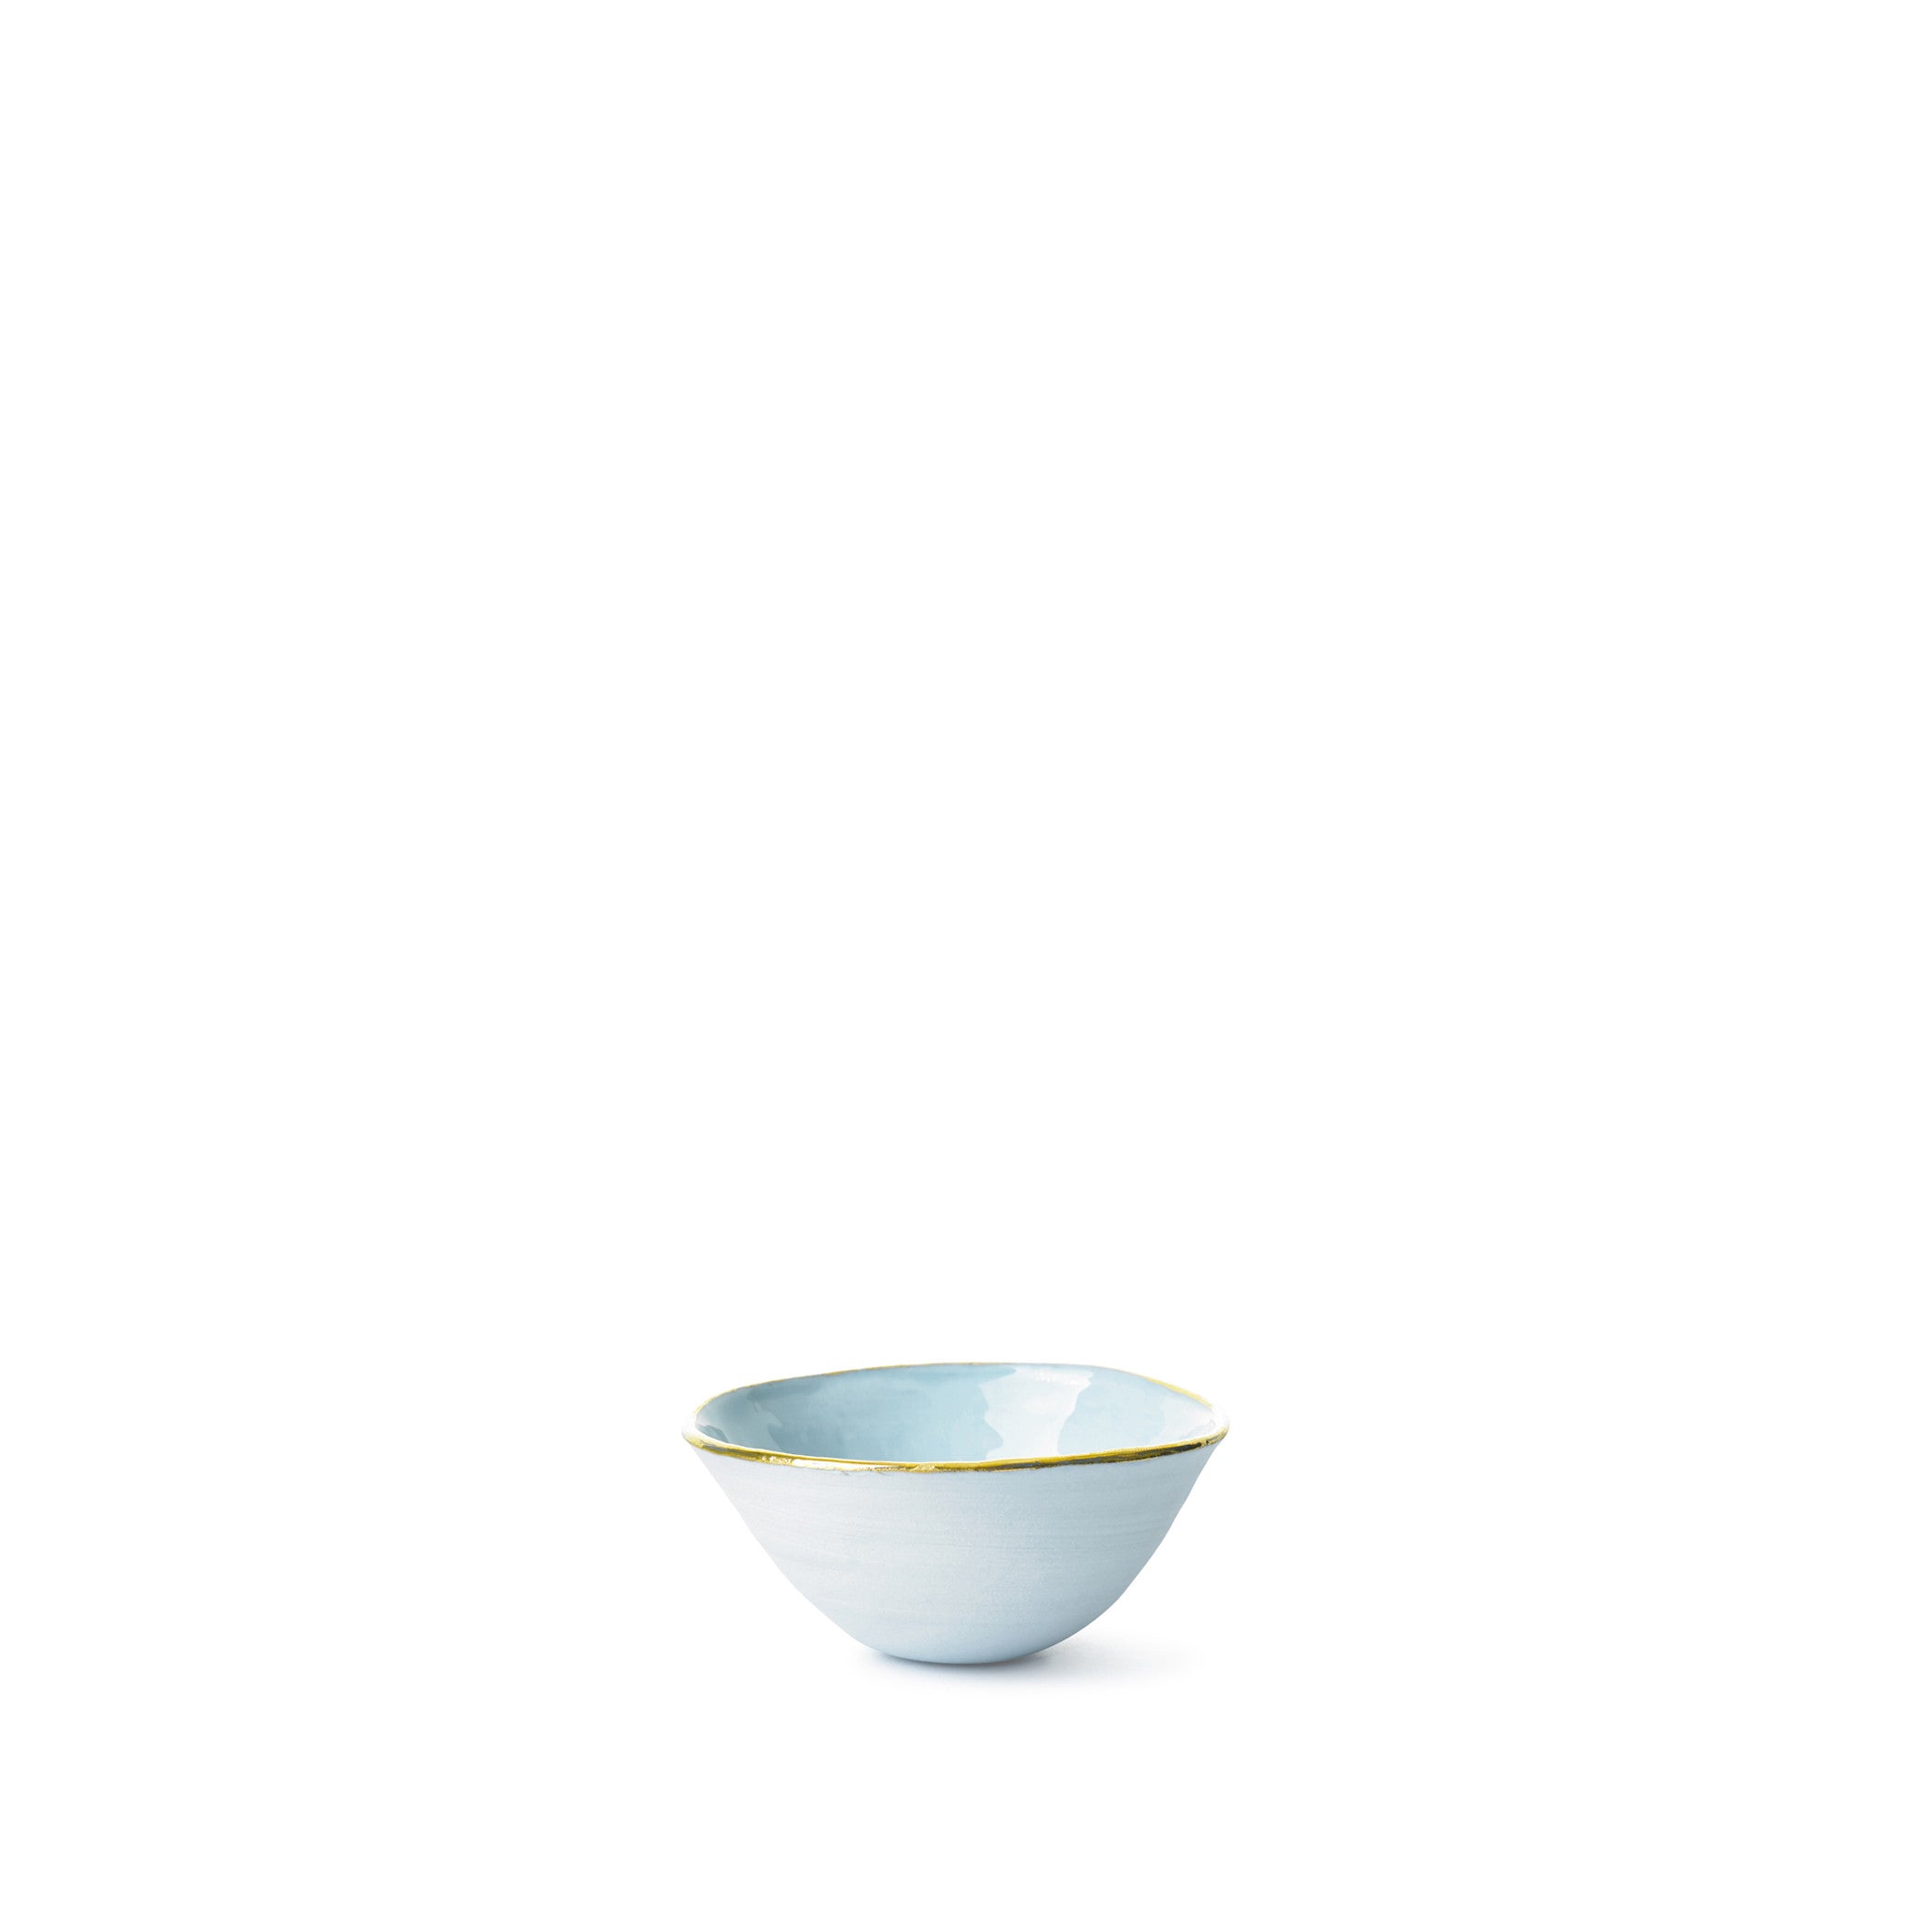 Small Light Blue Ceramic Bowl with Gold Rim, 6cm